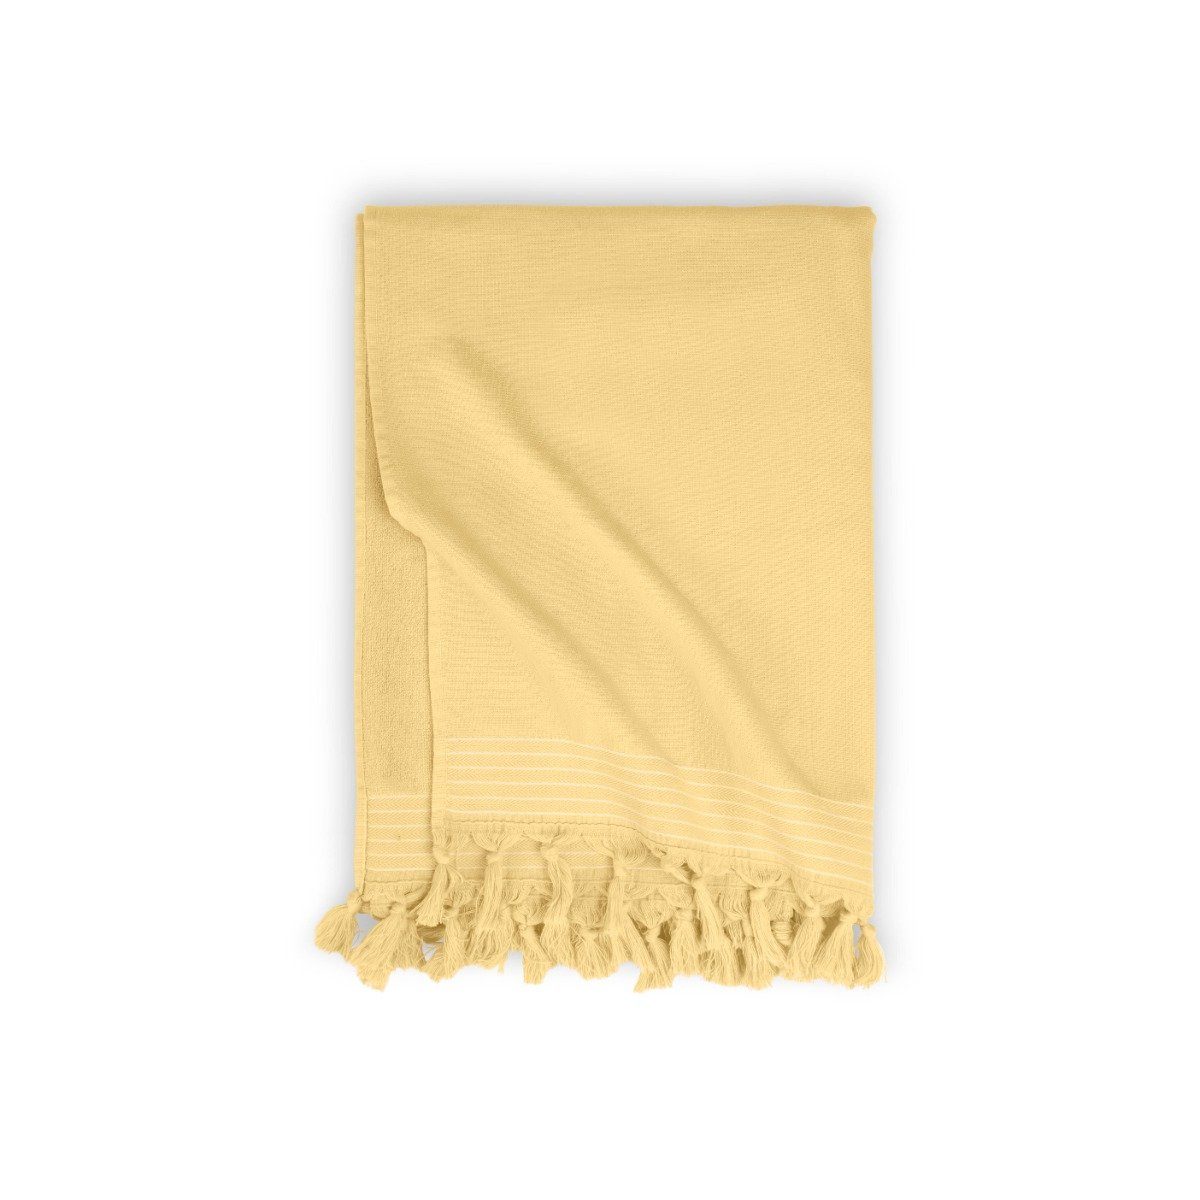 100x180 - Gelb Hammam Cotton Handtücher cm, Hamamtuch Walra Strandtuch Baumwolle 100% Soft Gelb